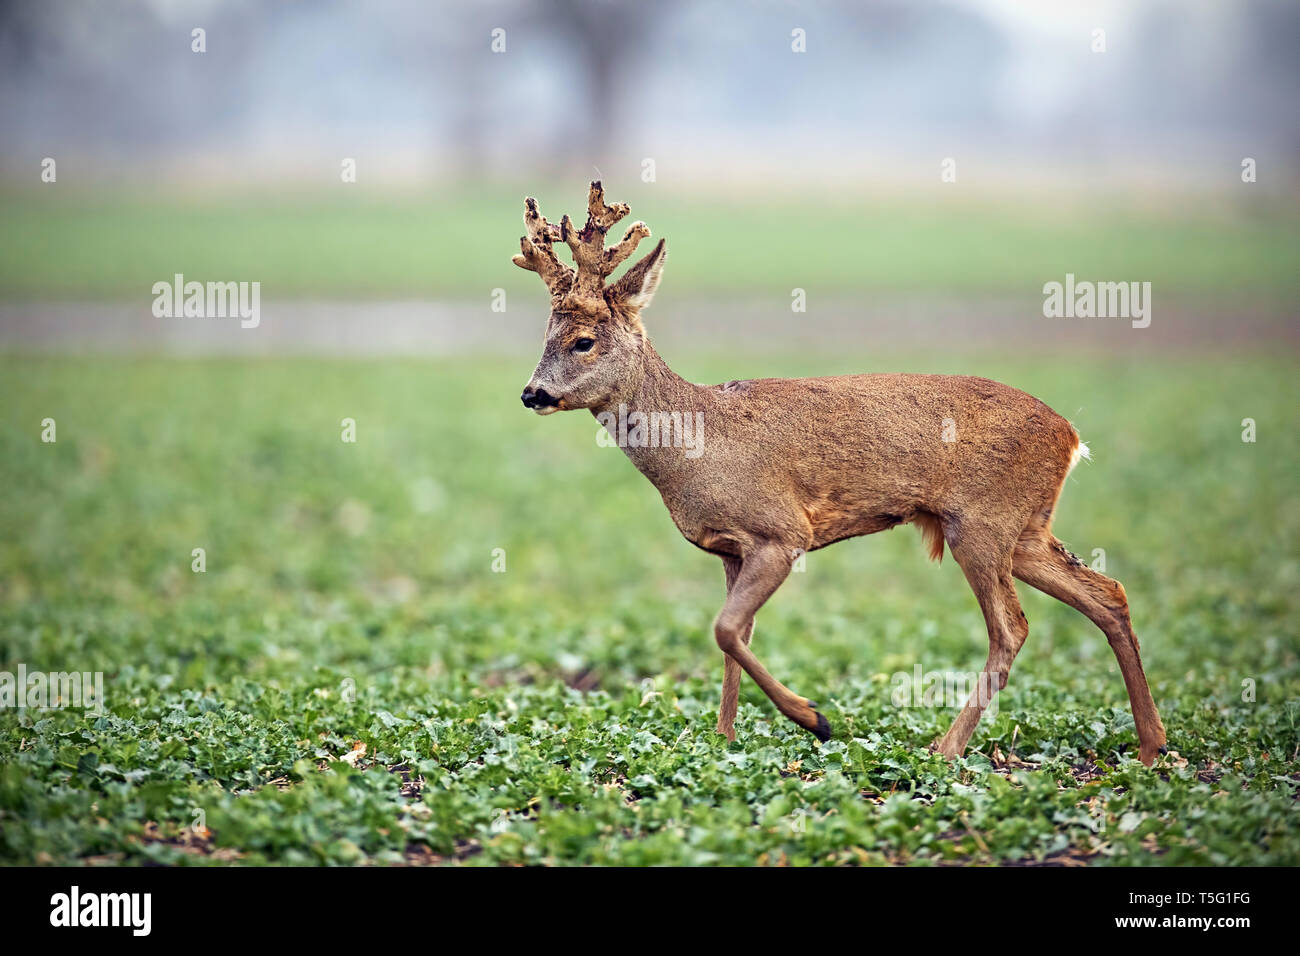 Roe deer, capreolus capreolus, buck with big antlers covered in velvet walking. Stock Photo